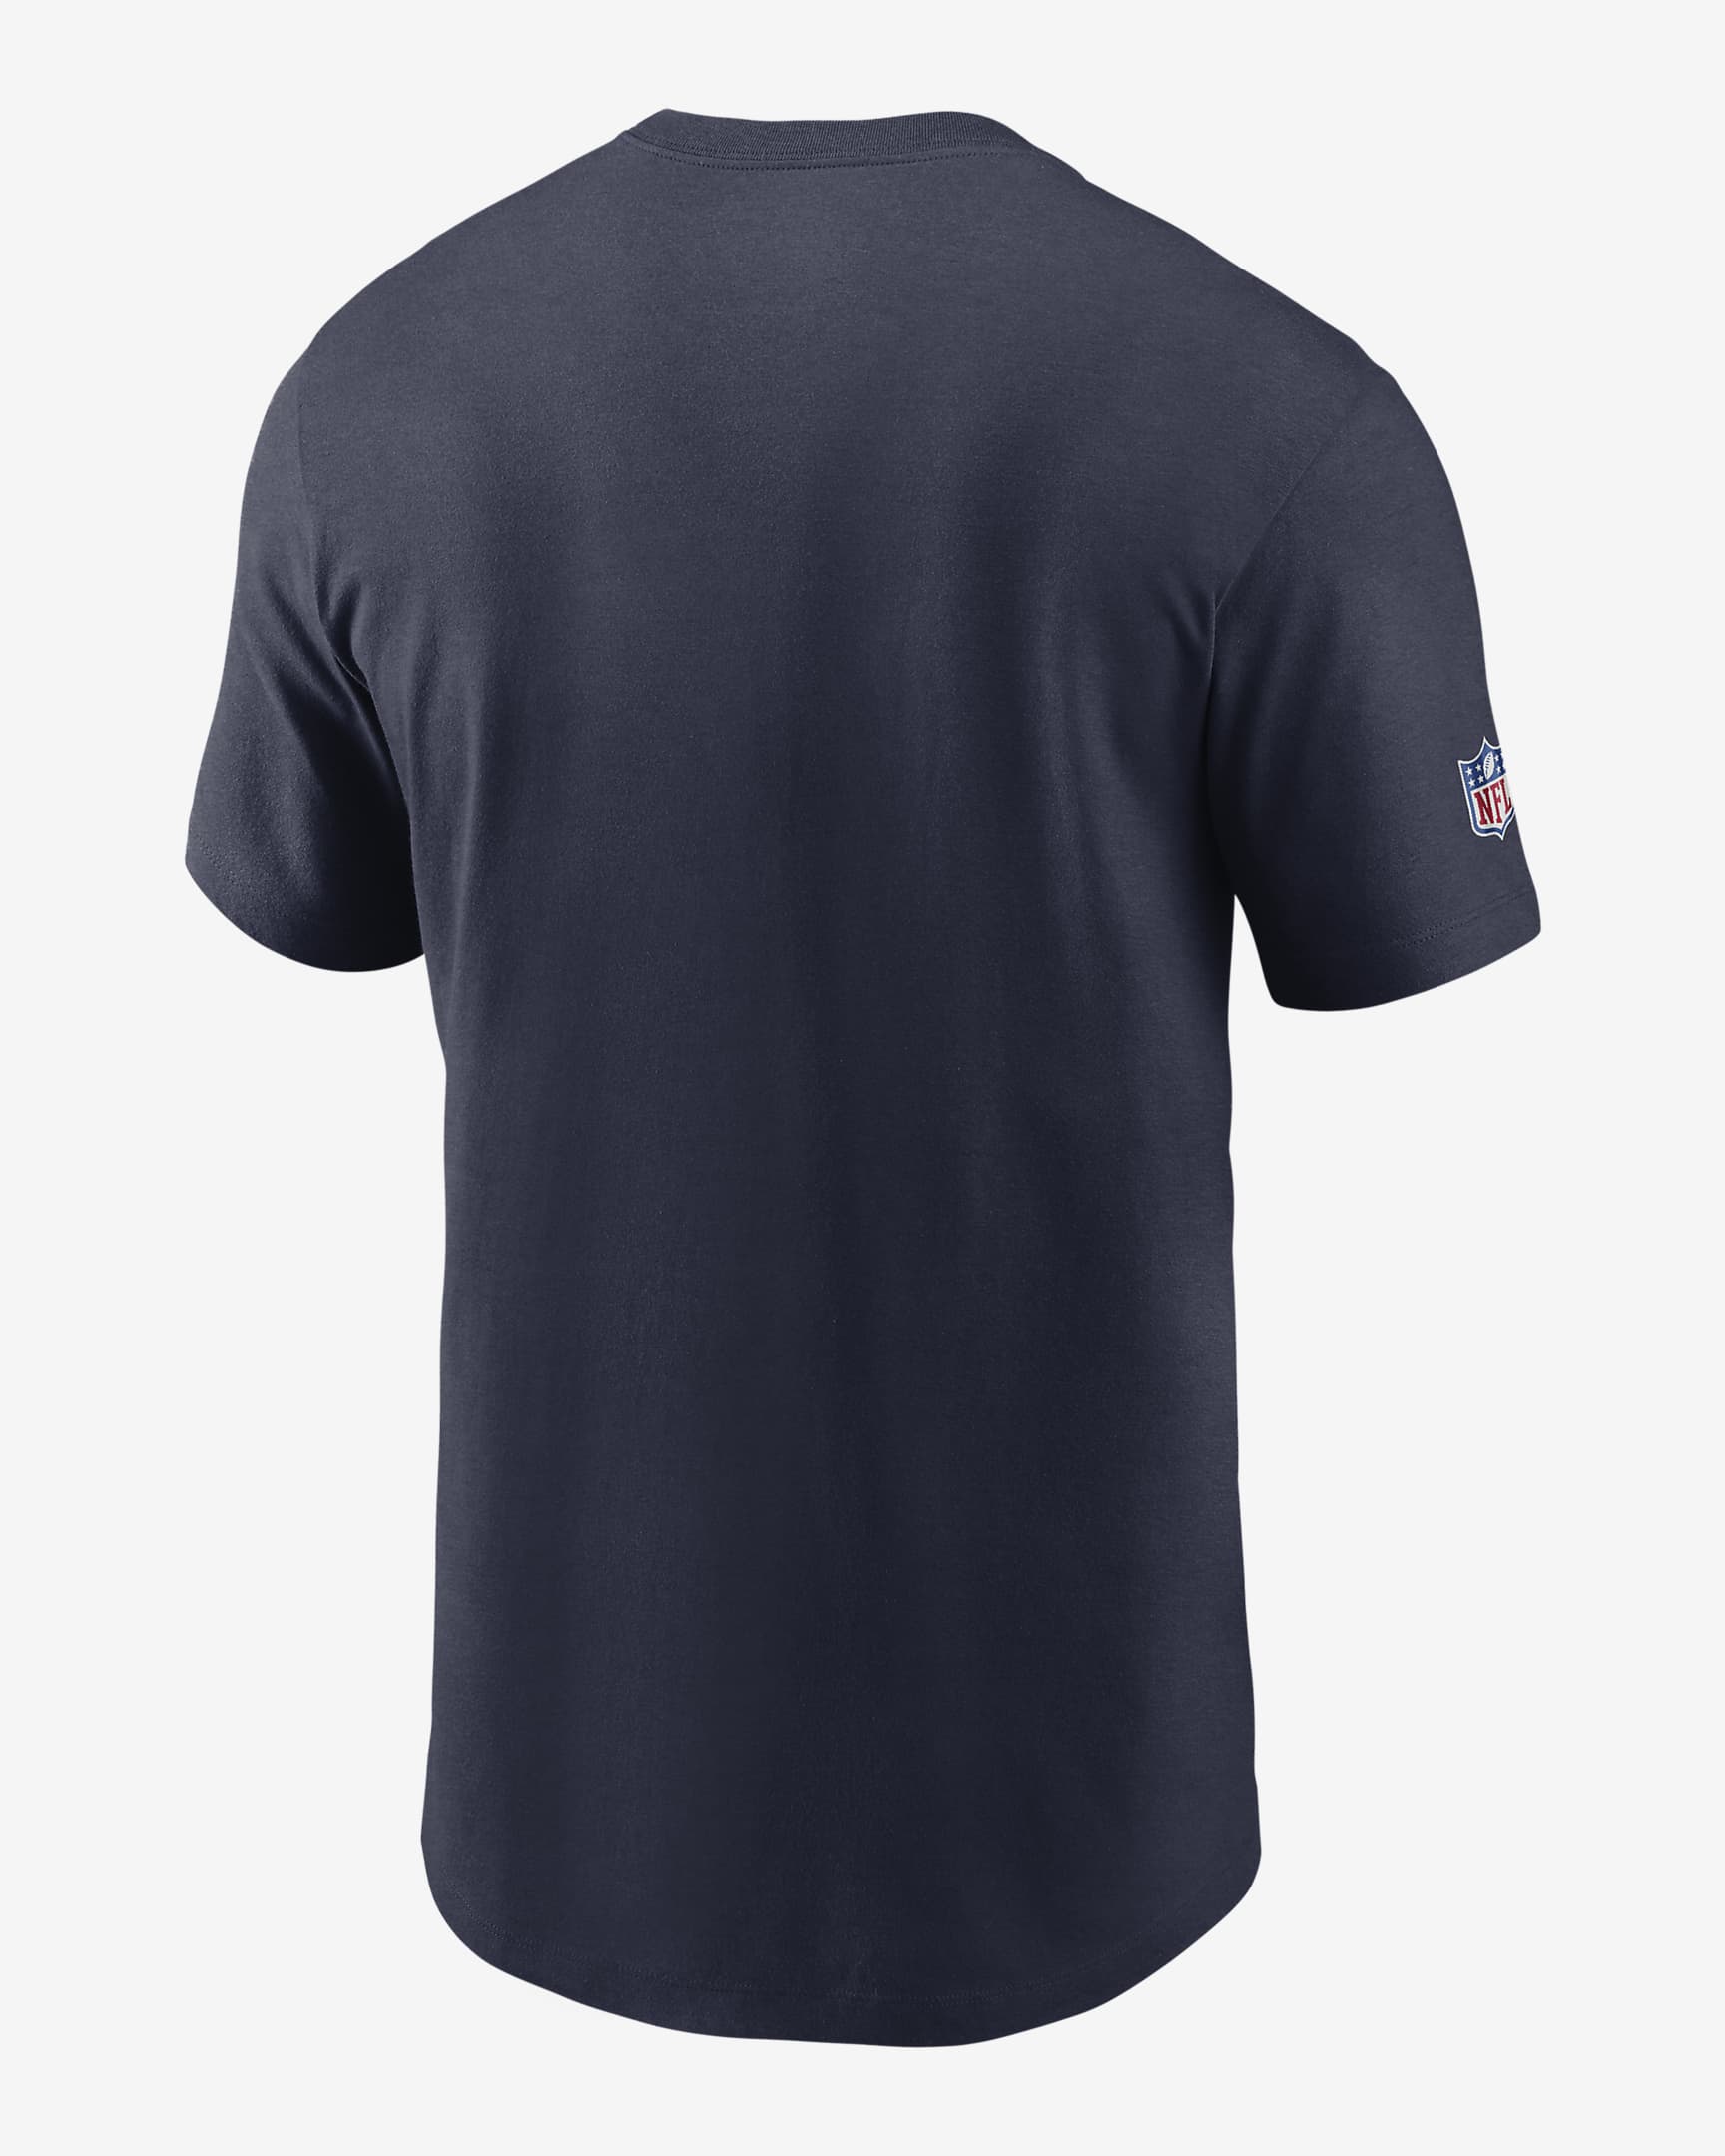 Nike Dri-FIT Lockup Team Issue (NFL Tennessee Titans) Men's T-Shirt ...